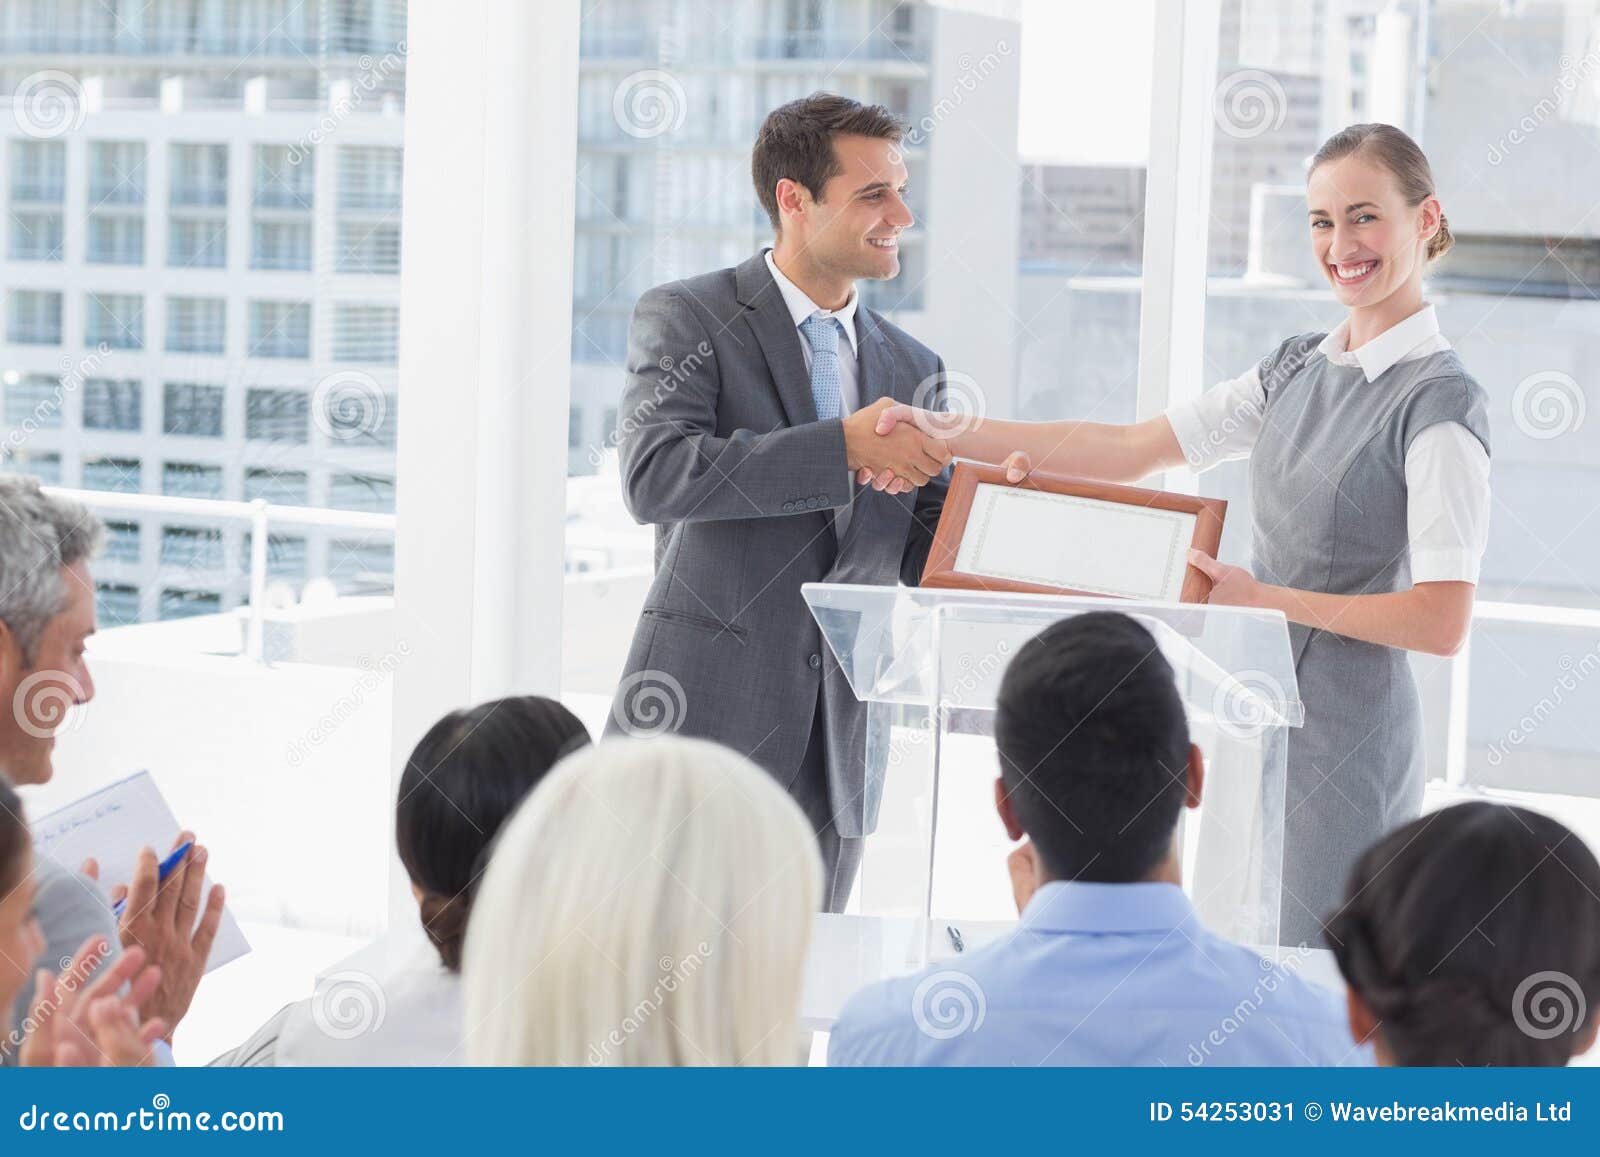 business-people-receiving-award-meeting-room-54253031.jpg